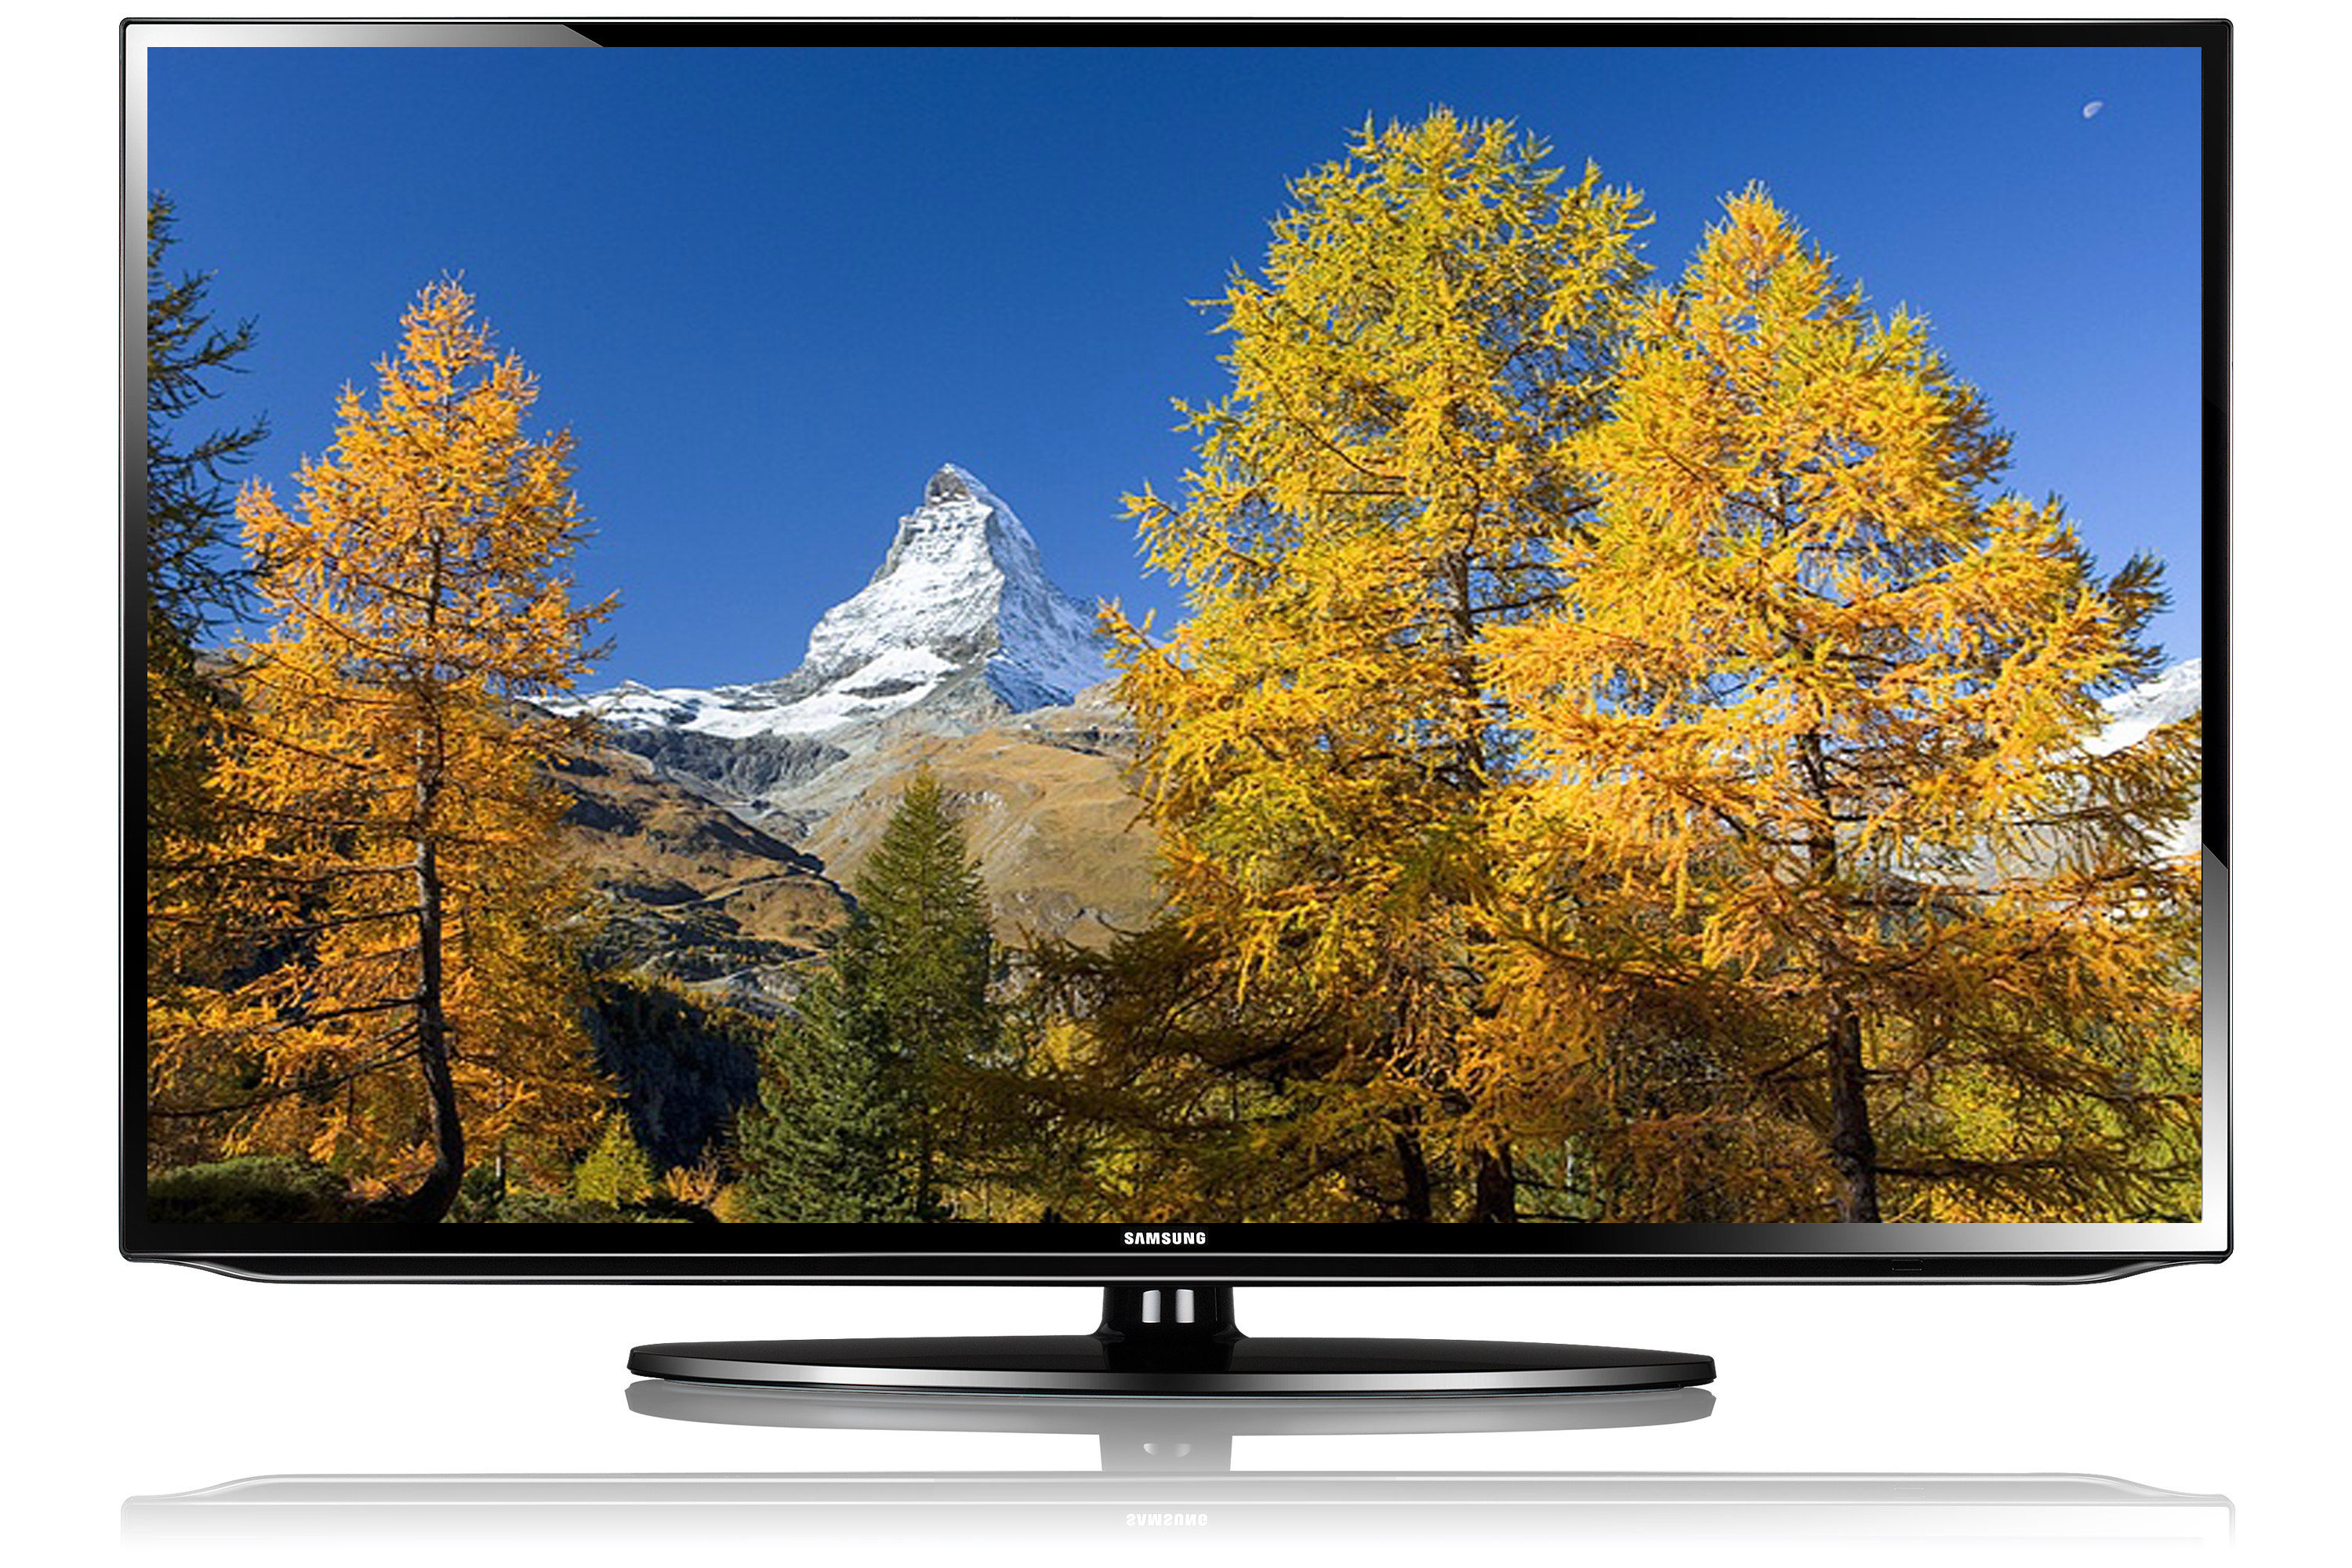 Телевизоры 32 дюйма купить в спб недорого. Samsung ue32f5020ak. Samsung ue40 5007. Телевизор ue39f5020ak самсунг. Самсунг телевизор модель ue40eh5007k.